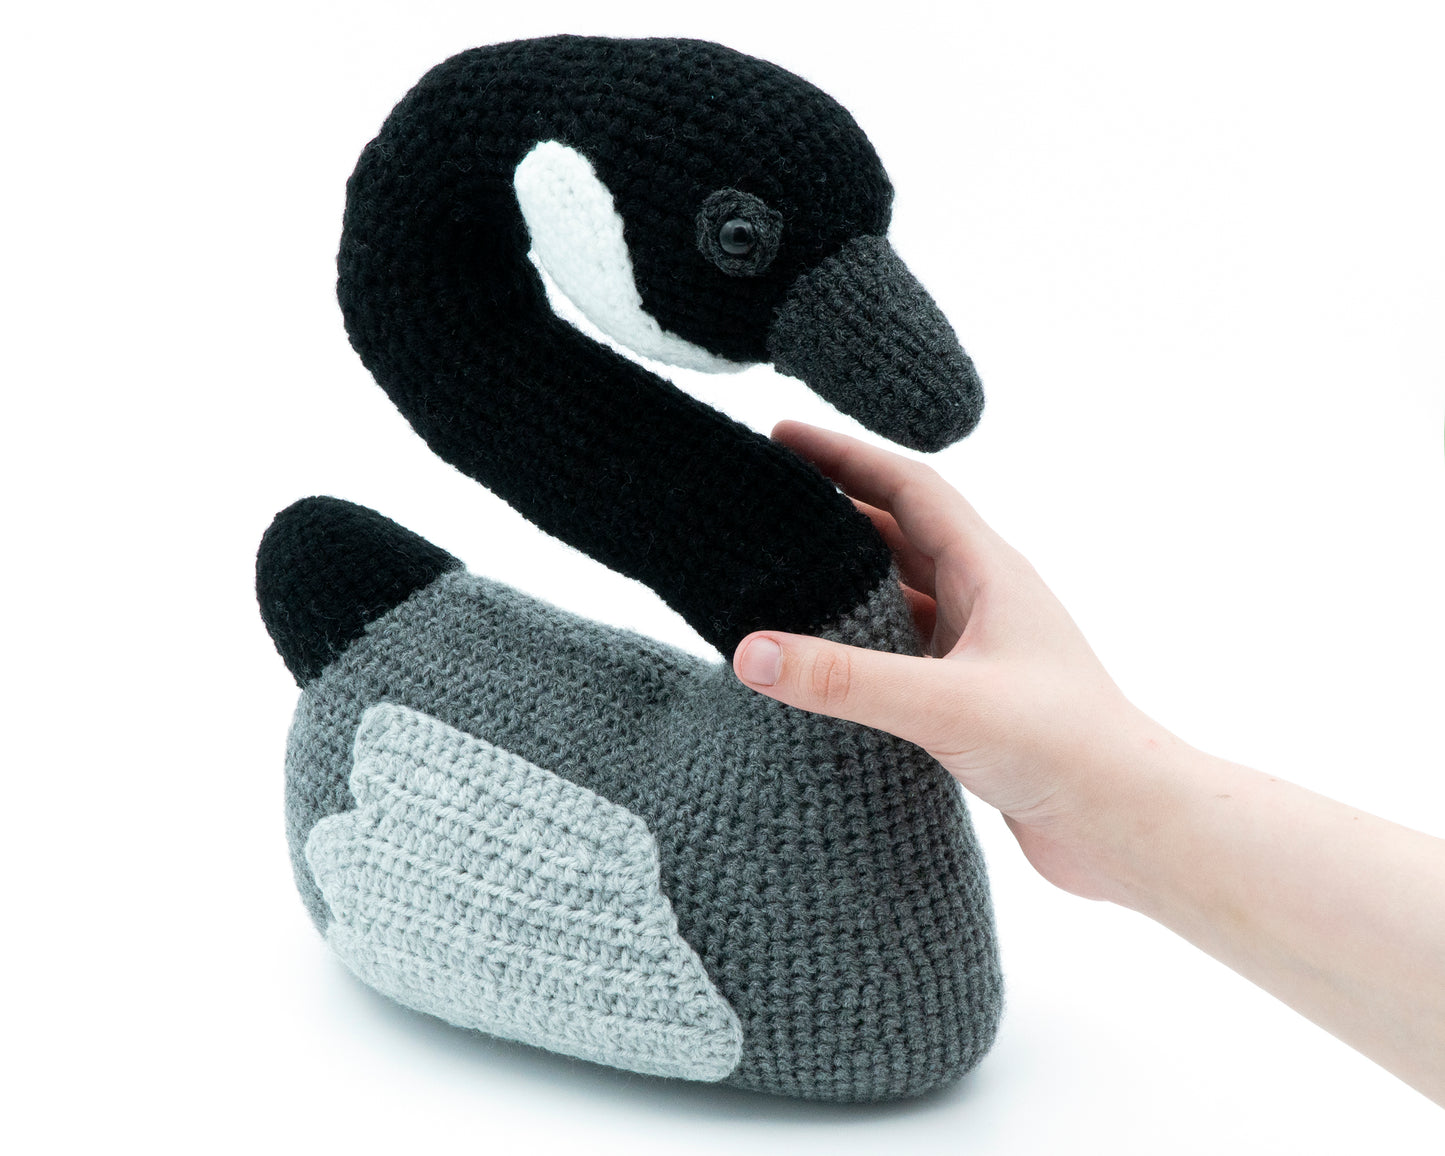 amigurumi crochet canada goose pattern in hand for size comparison